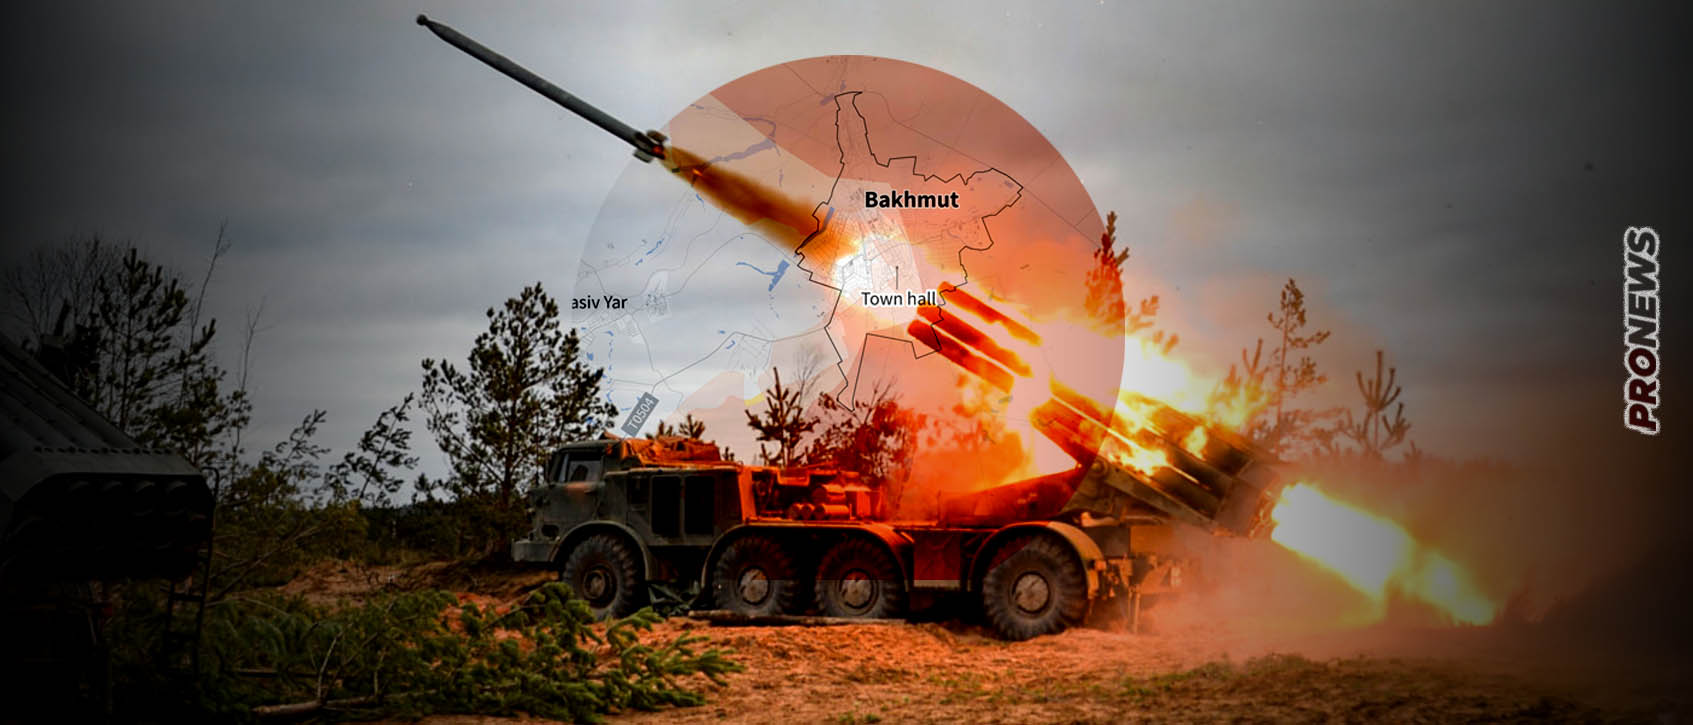 Οι ρωσικές δυνάμεις ετοιμάζονται για έφοδο στο νέο ουκρανικό οχυρό Τσάσιβ Γιαρ – Στα βορειοδυτικά του Μπάκχμουτ (βίντεο)